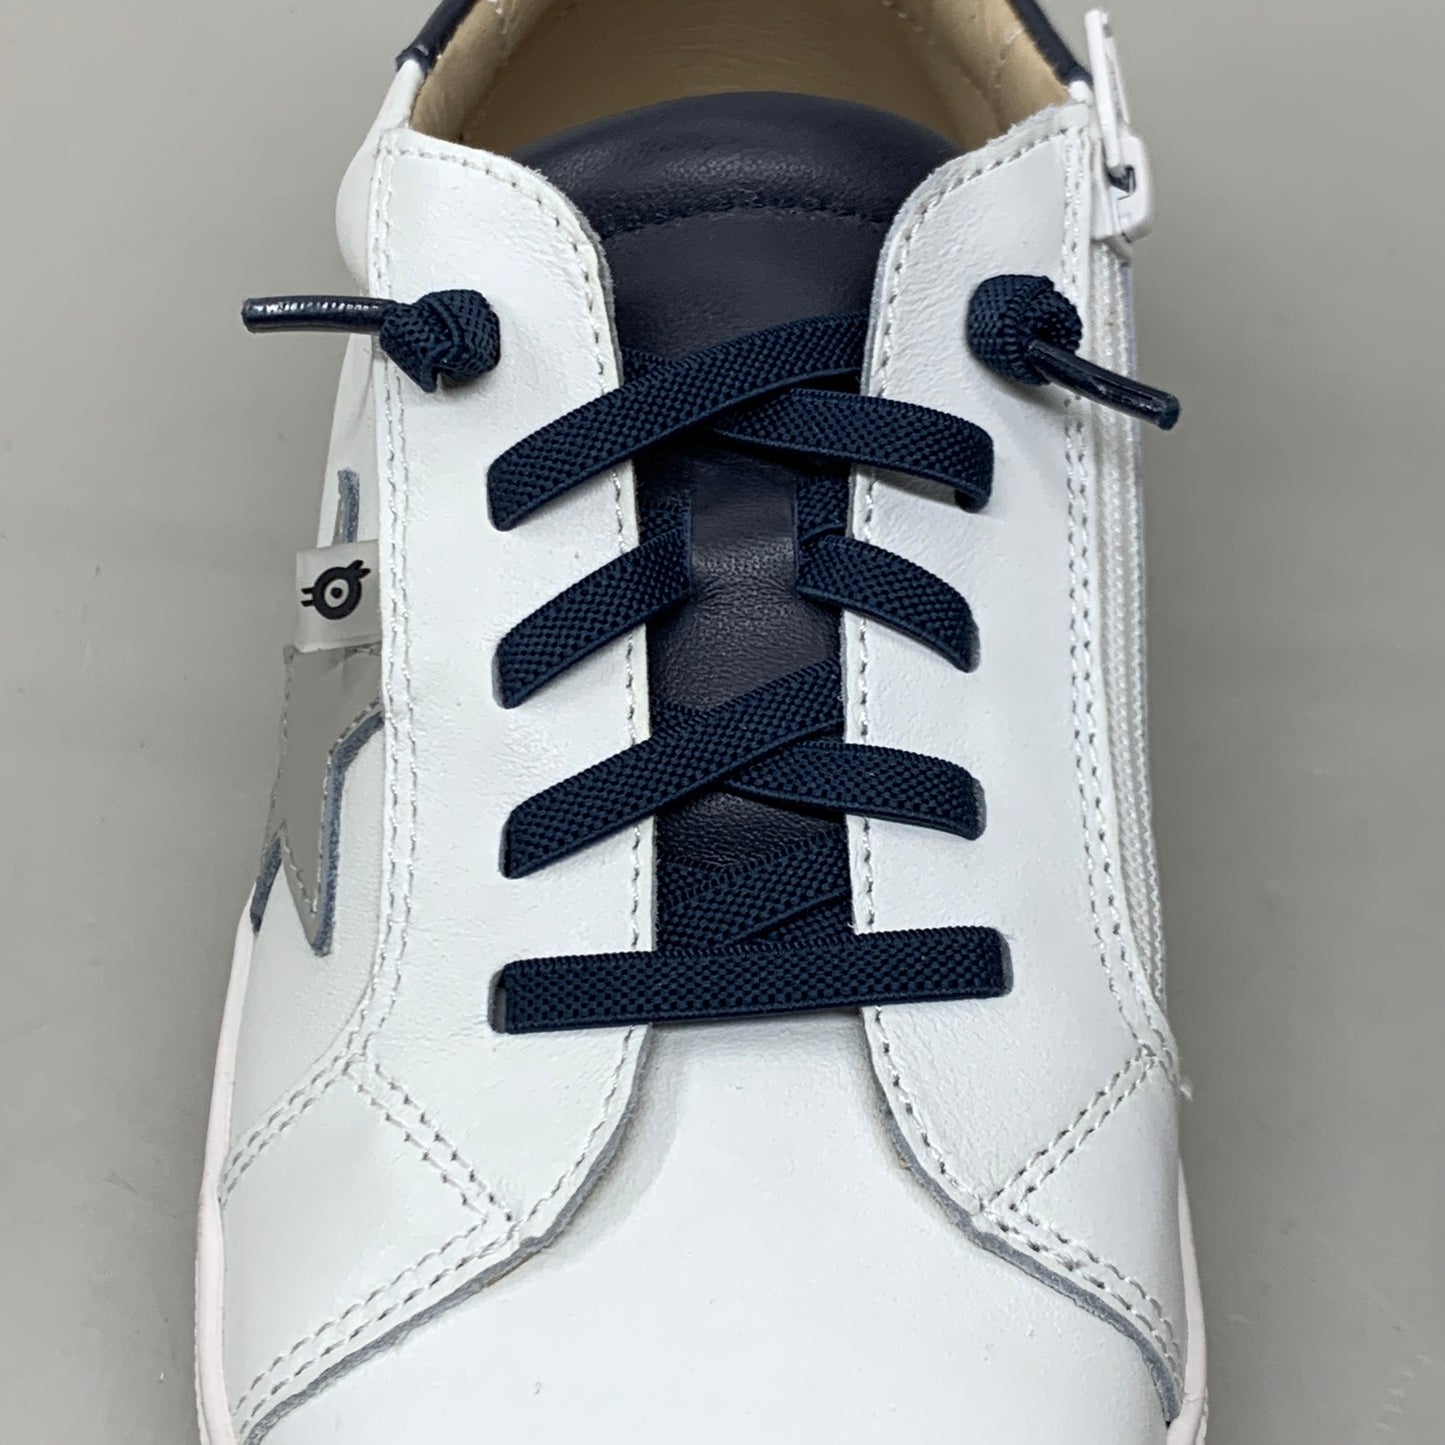 OLD SOLES Comet Runner Sneakers Kid’s Sz 1.5 EU 33 Snow/Navy/Gris #6149